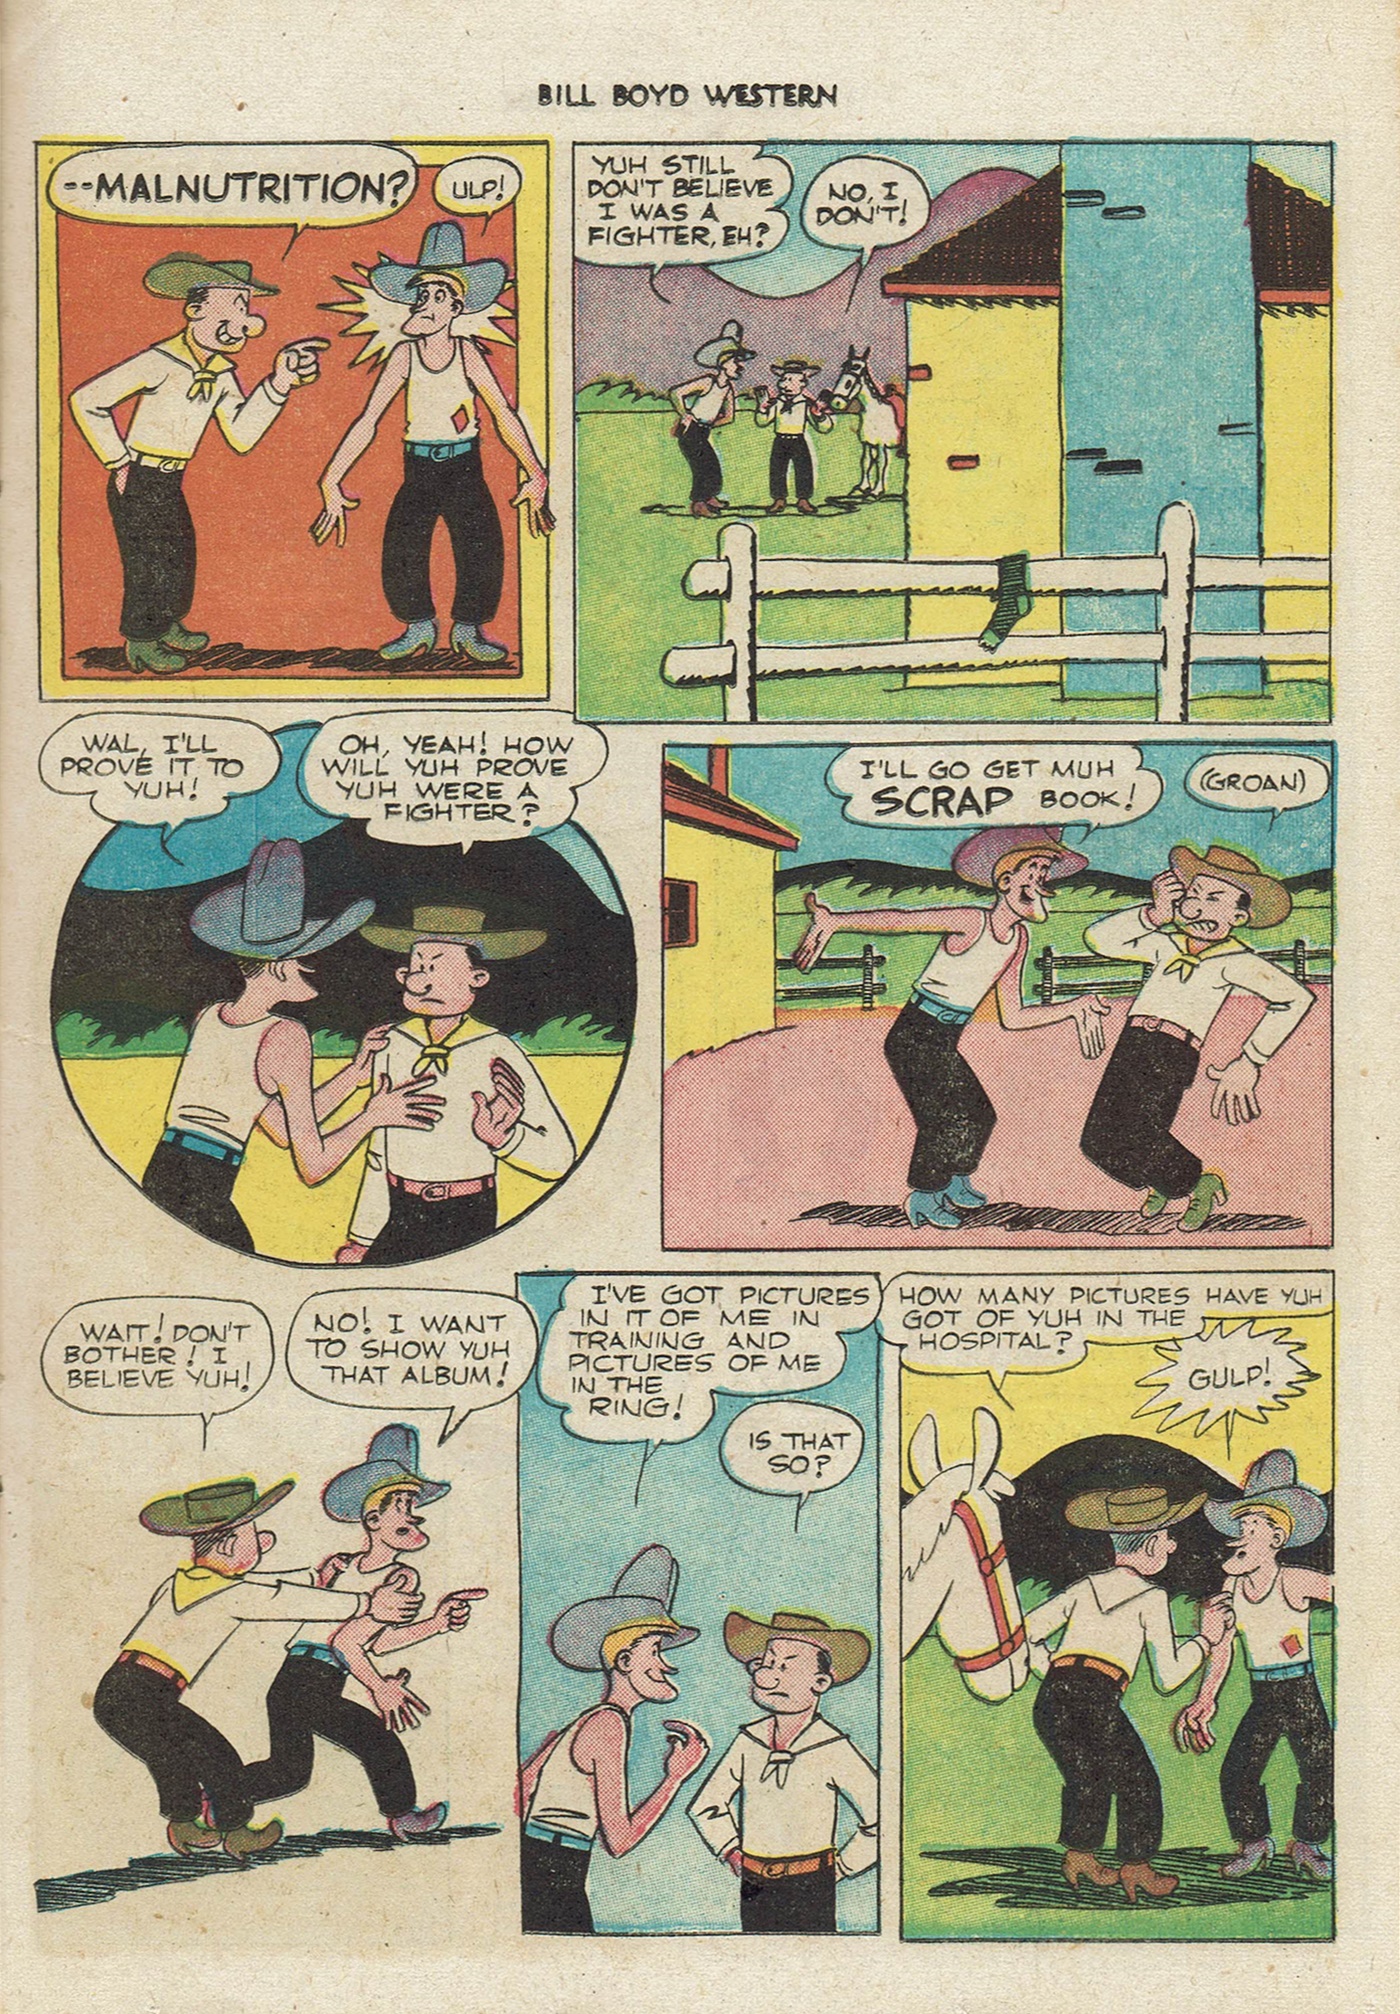 Read online Bill Boyd Western comic -  Issue #13 - 25